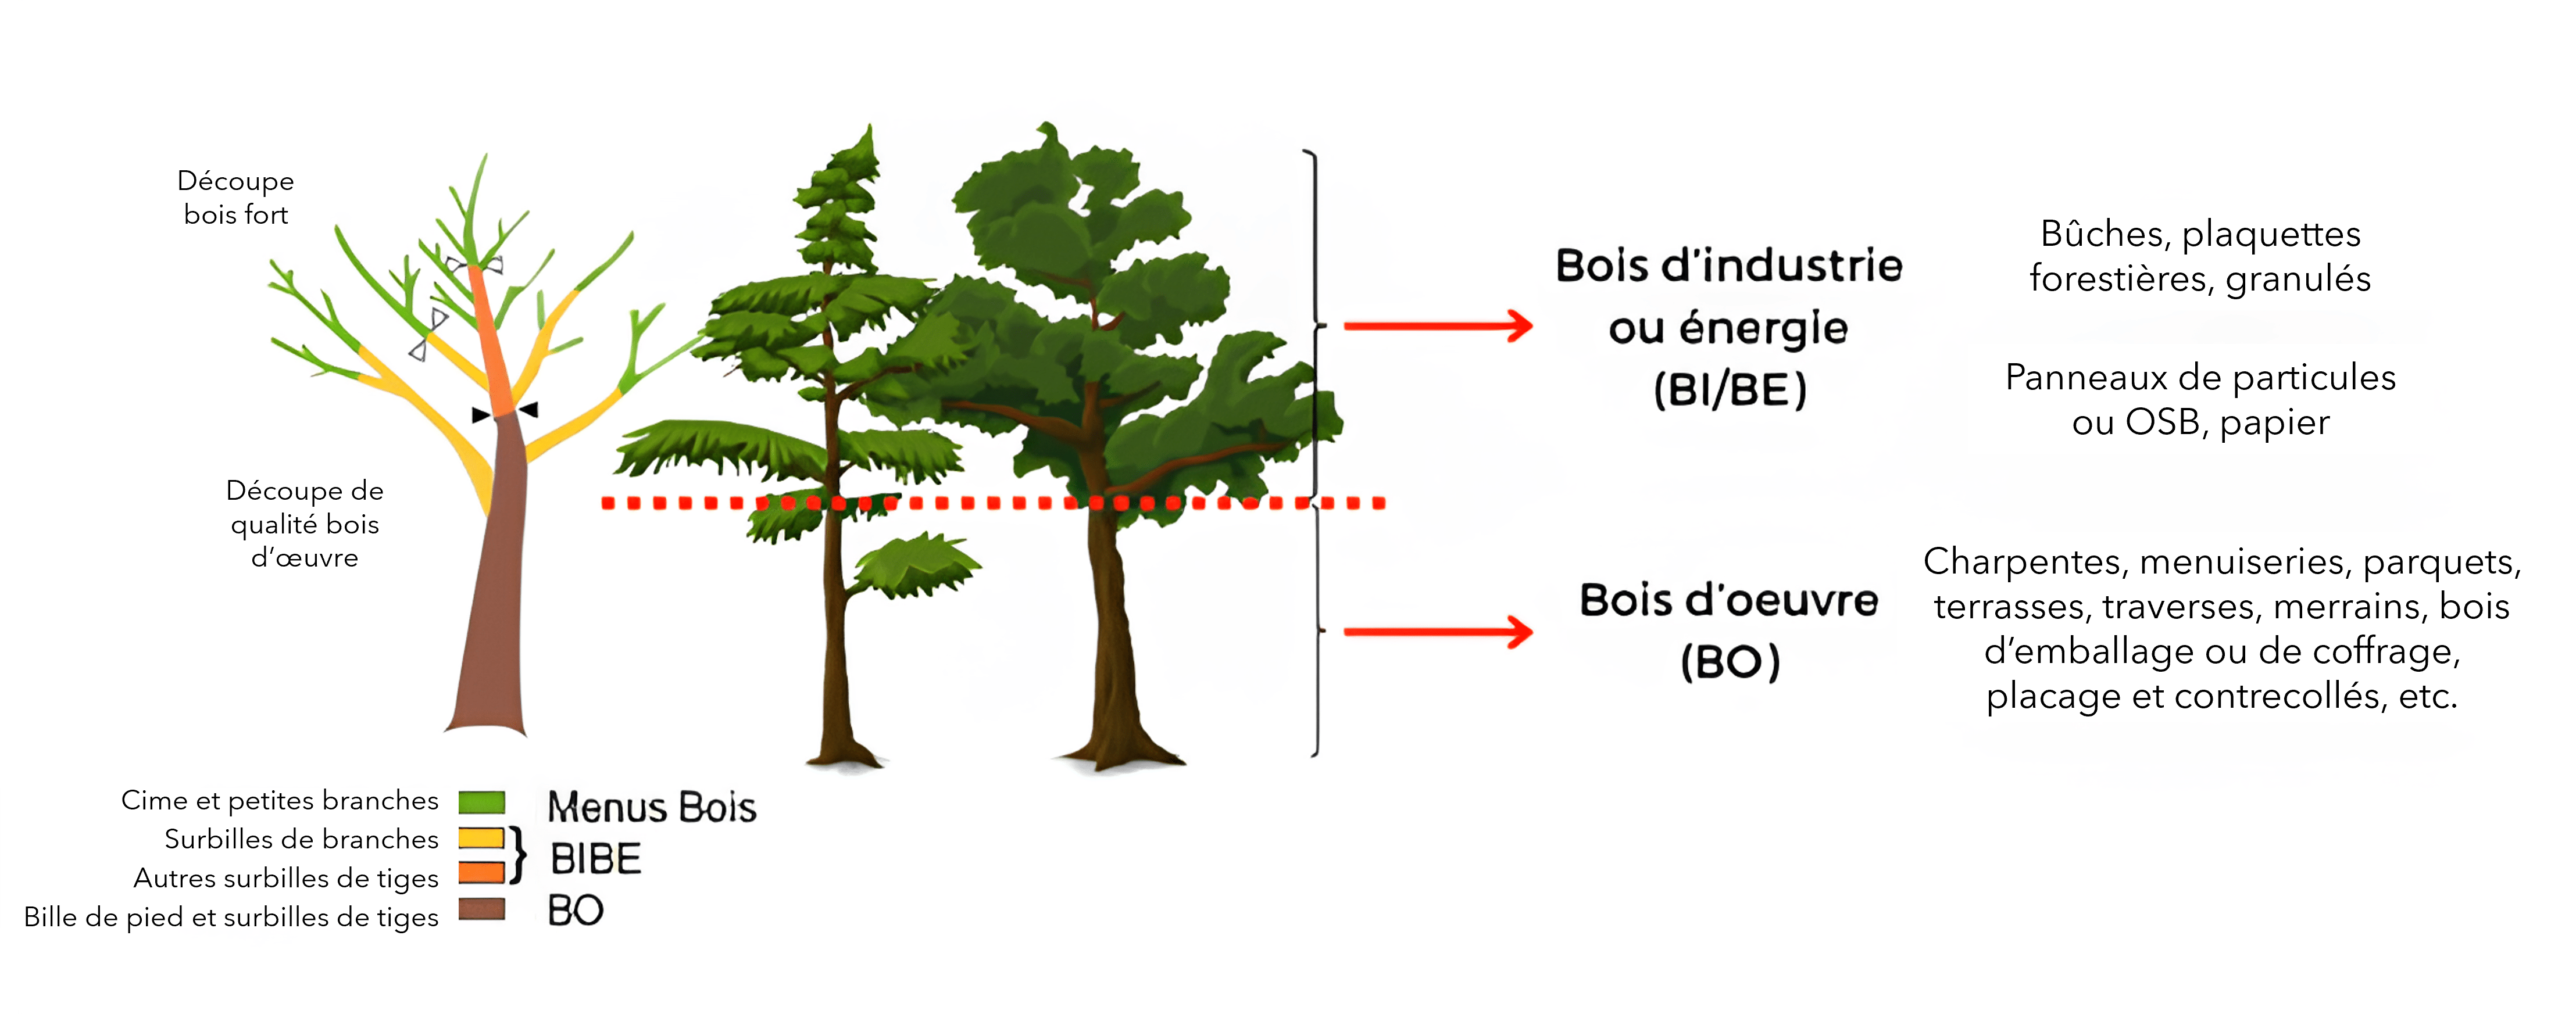 Schéma indiquant l'utilisation faite du bois en fonction de ses dimensions et sa position dans l'arbre.